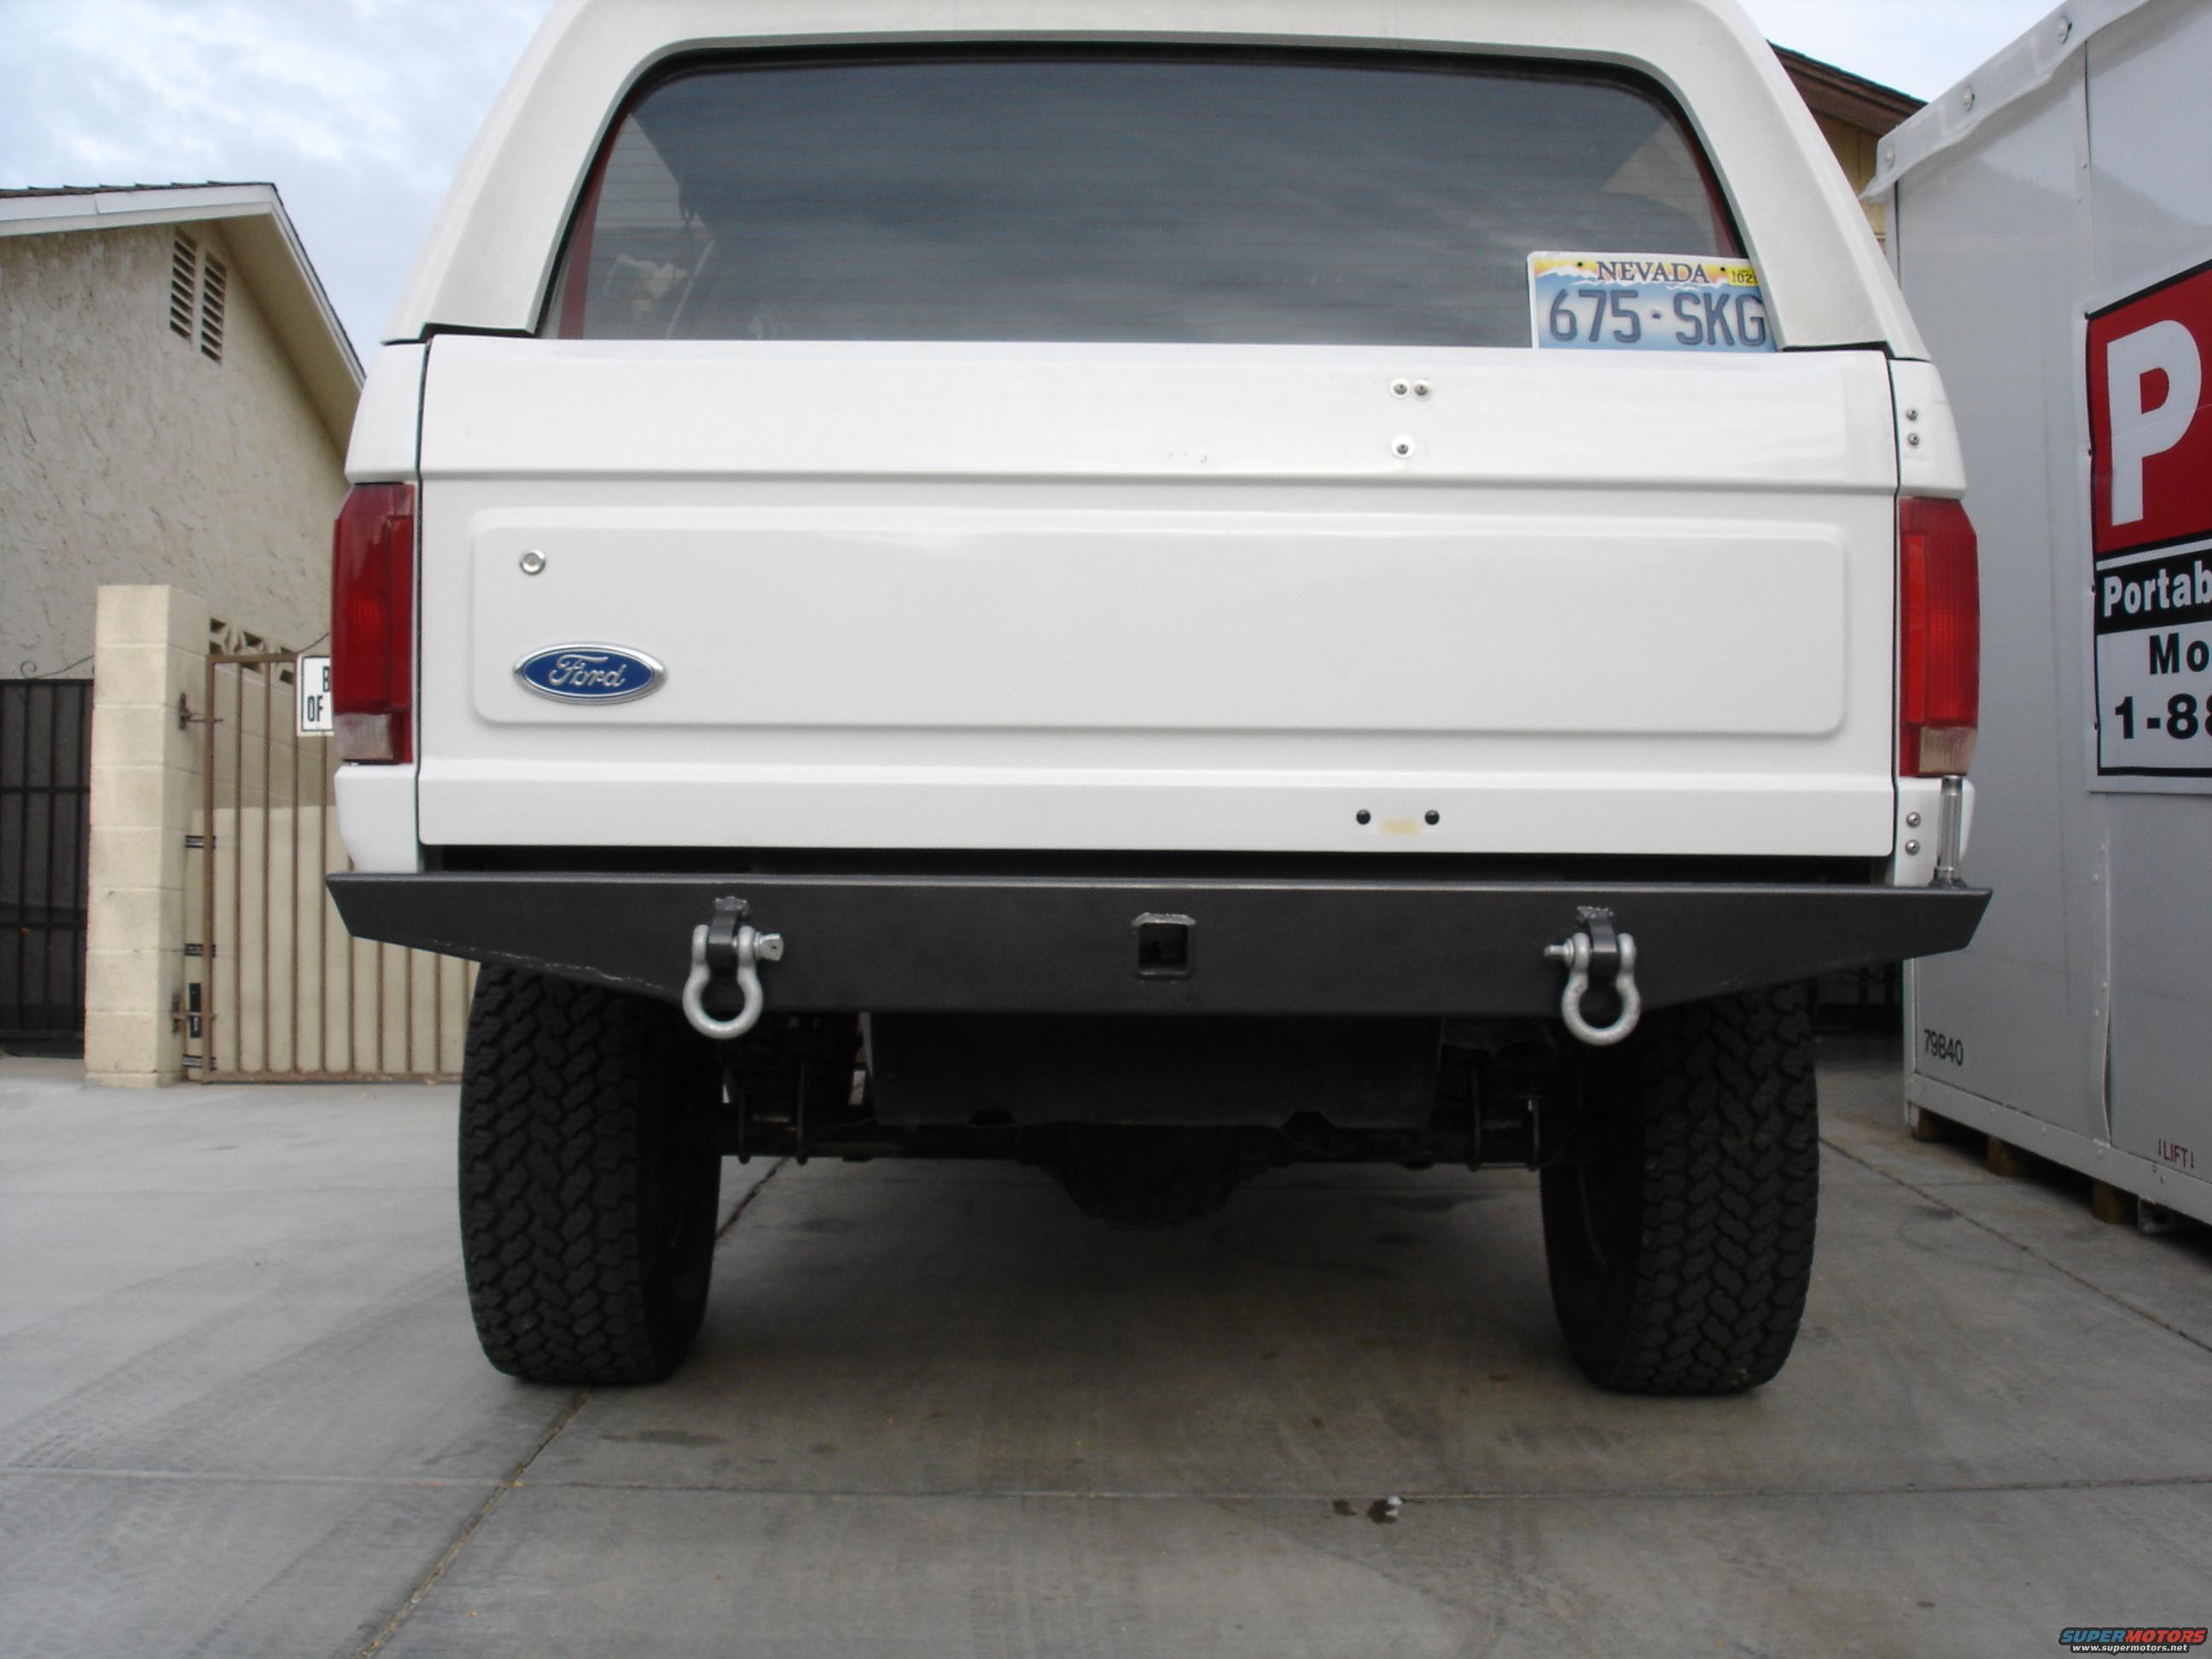 1996 Ford bronco rear bumper #3